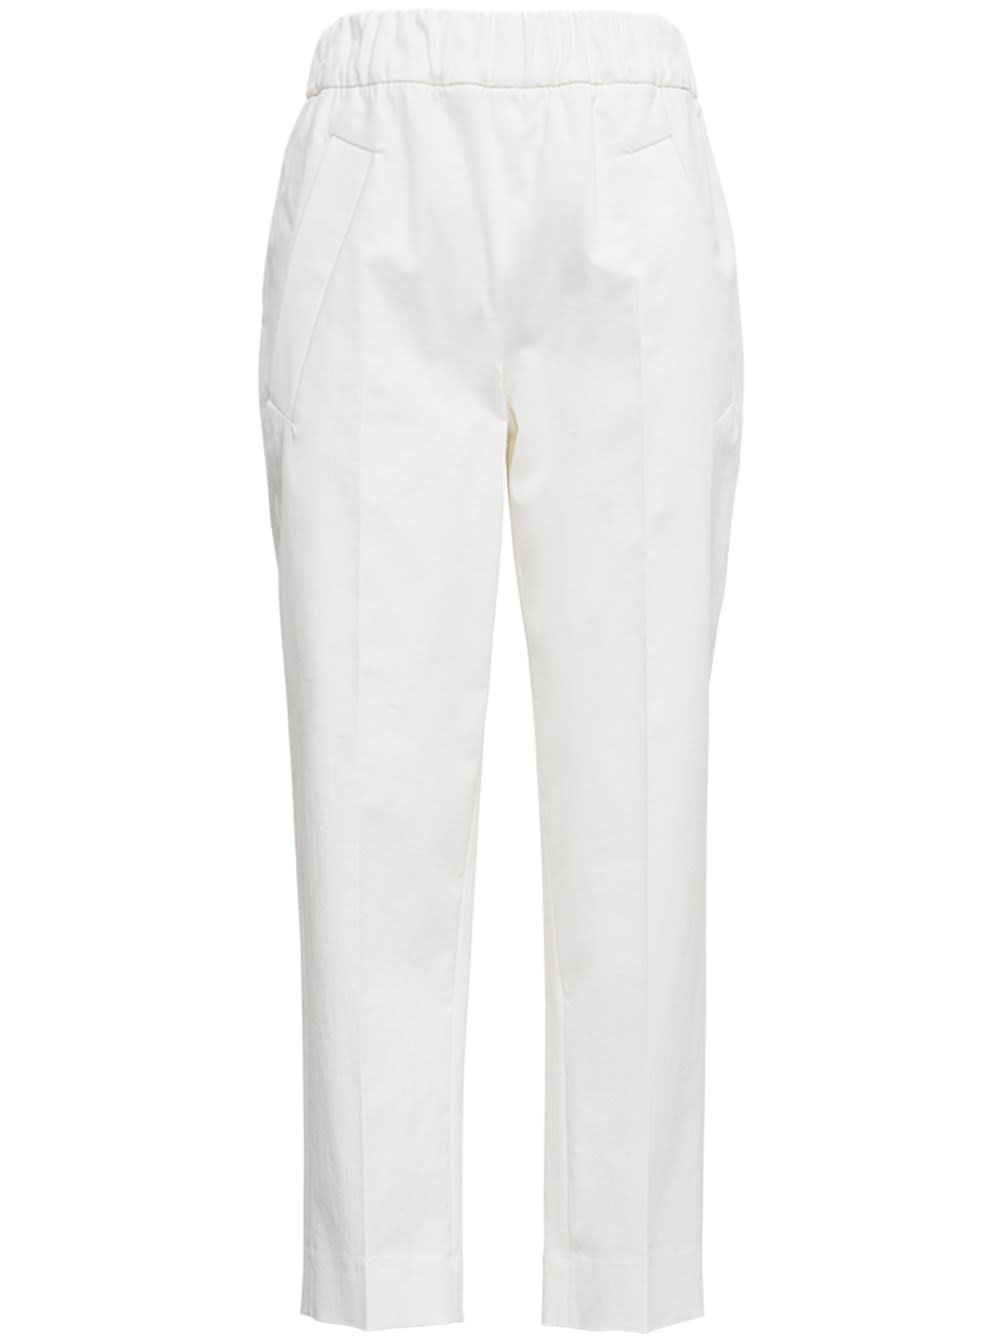 Tela Kilo Pants In White Cotton